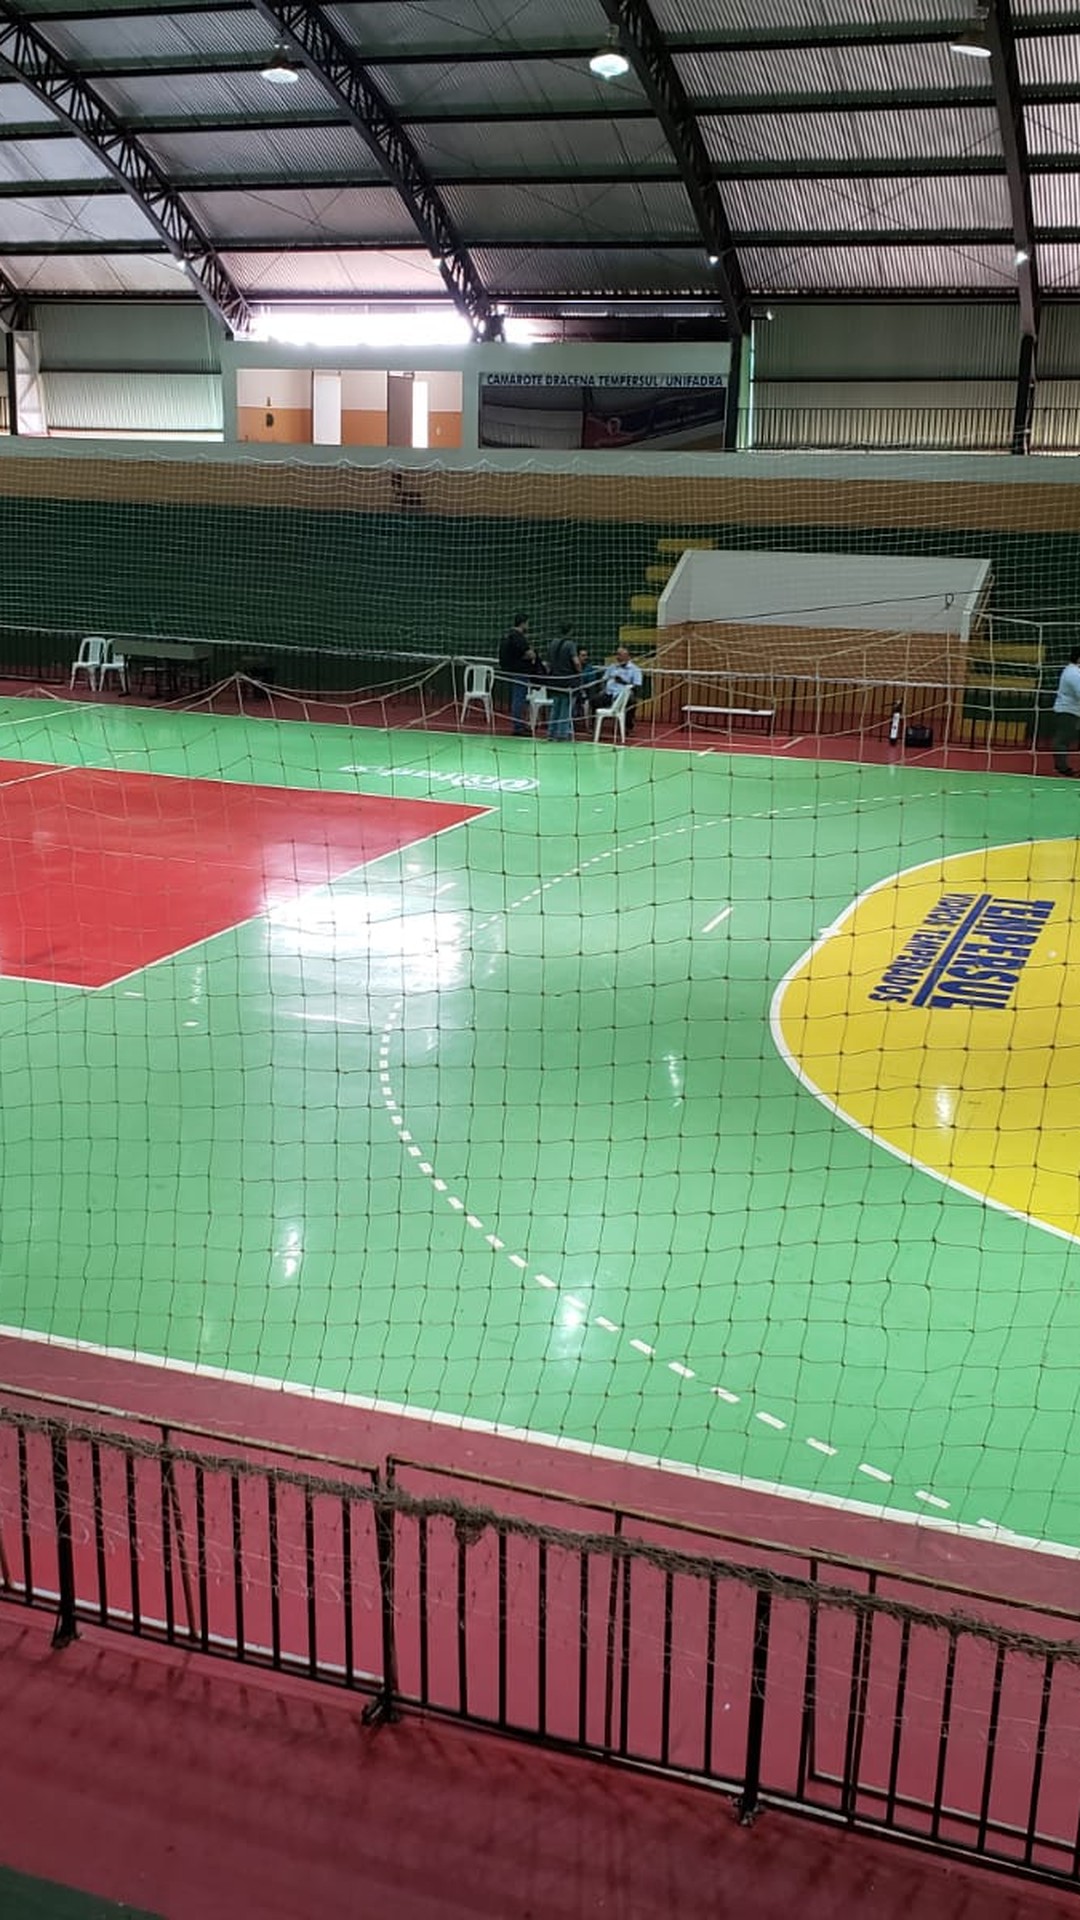 Futsal Planet: Falcão vence eleição de melhor jogador do mundo pela 4ª vez